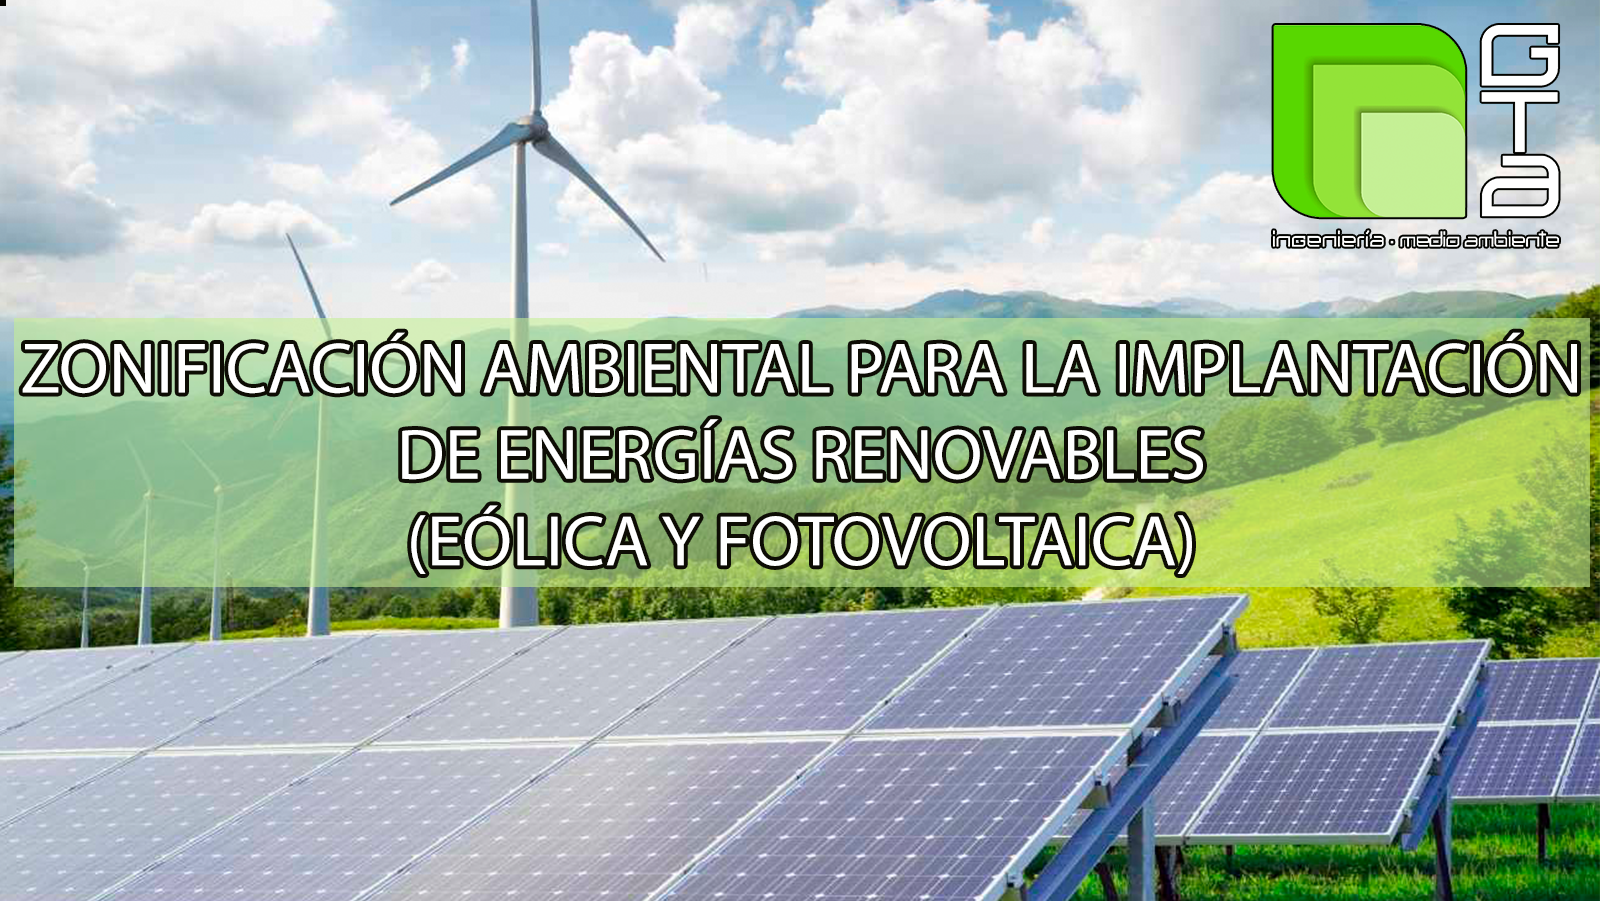 Zonificación ambiental para la implantación de energías renovables